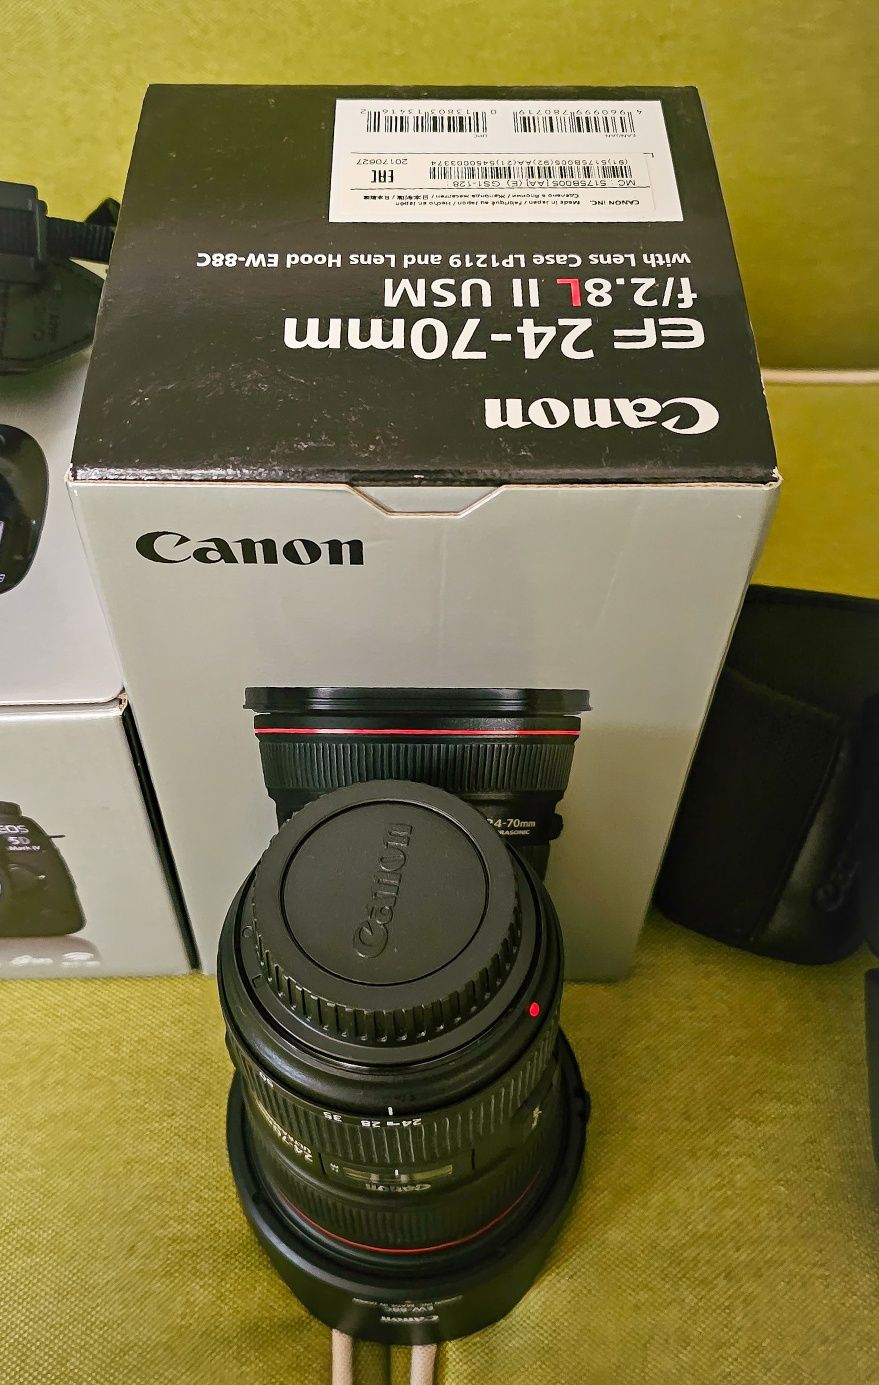 Kit complet Canon 5d mark 4 + Obiectiv Canon + Obiectiv Tamron!